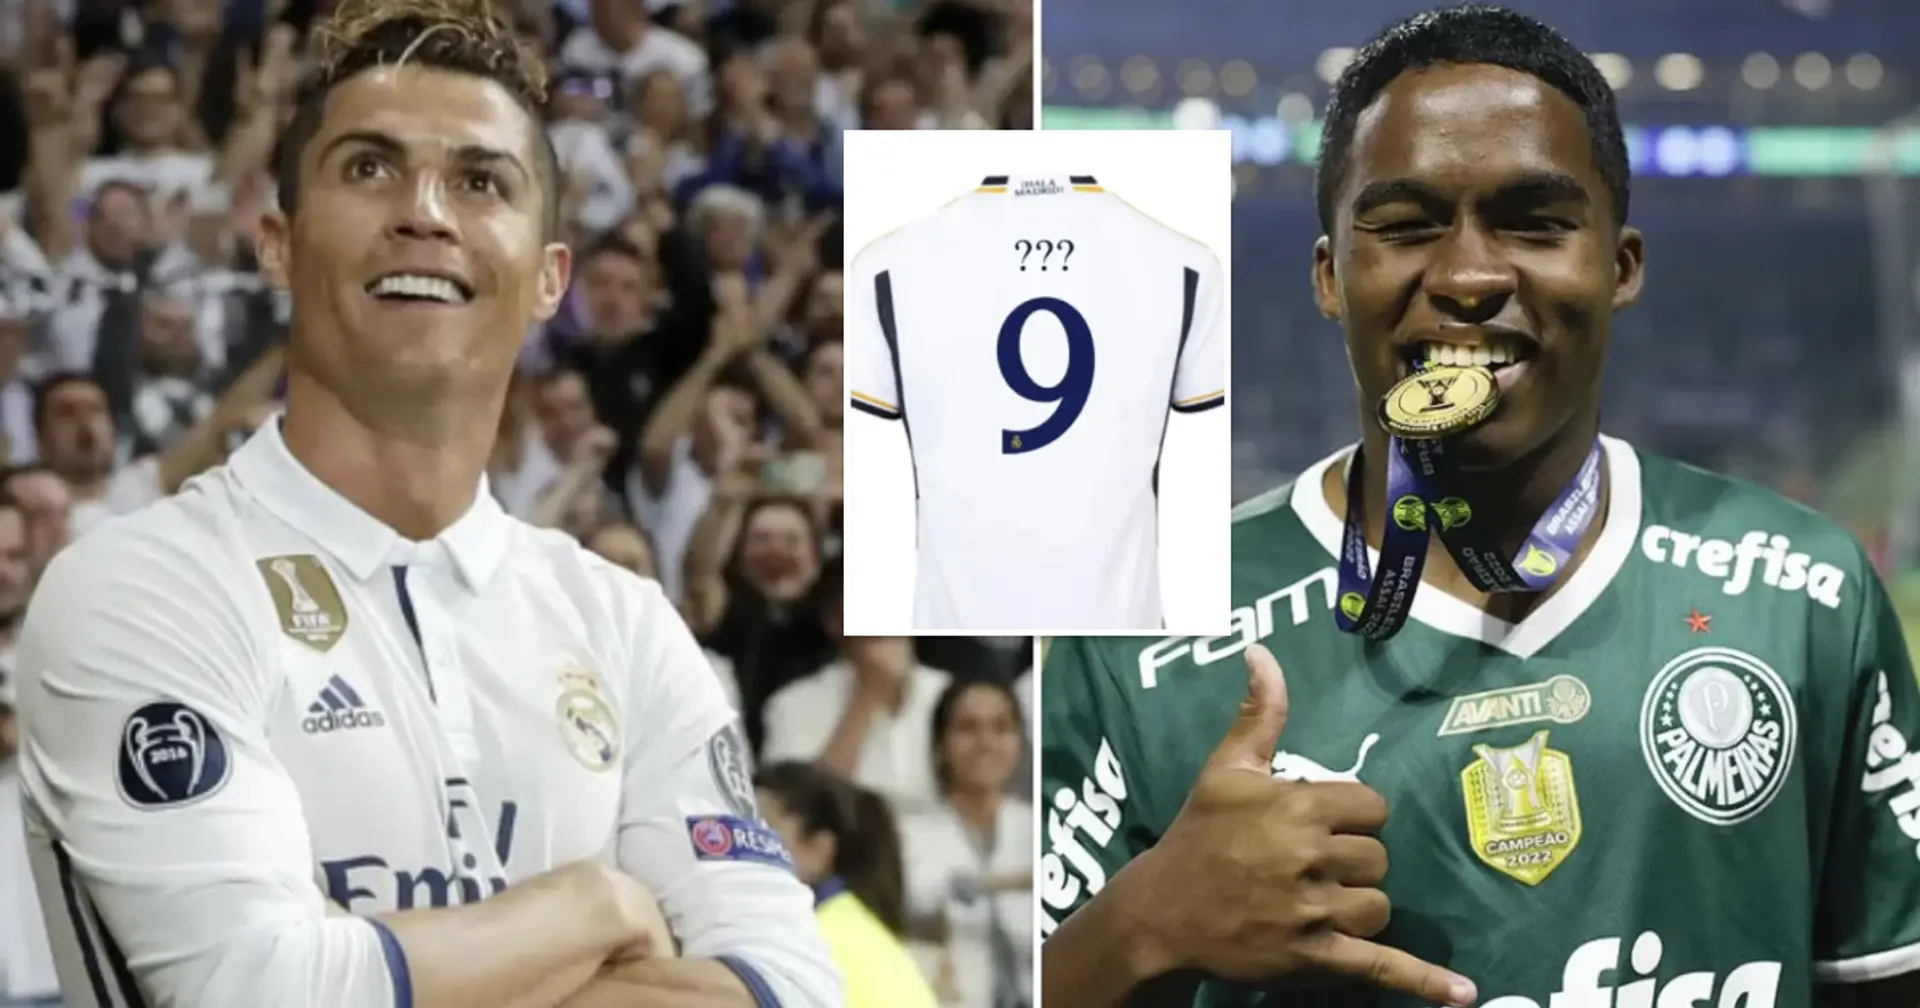 The Rising Star Endrick: Emulating Cristiano Ronaldo at Real Madrid